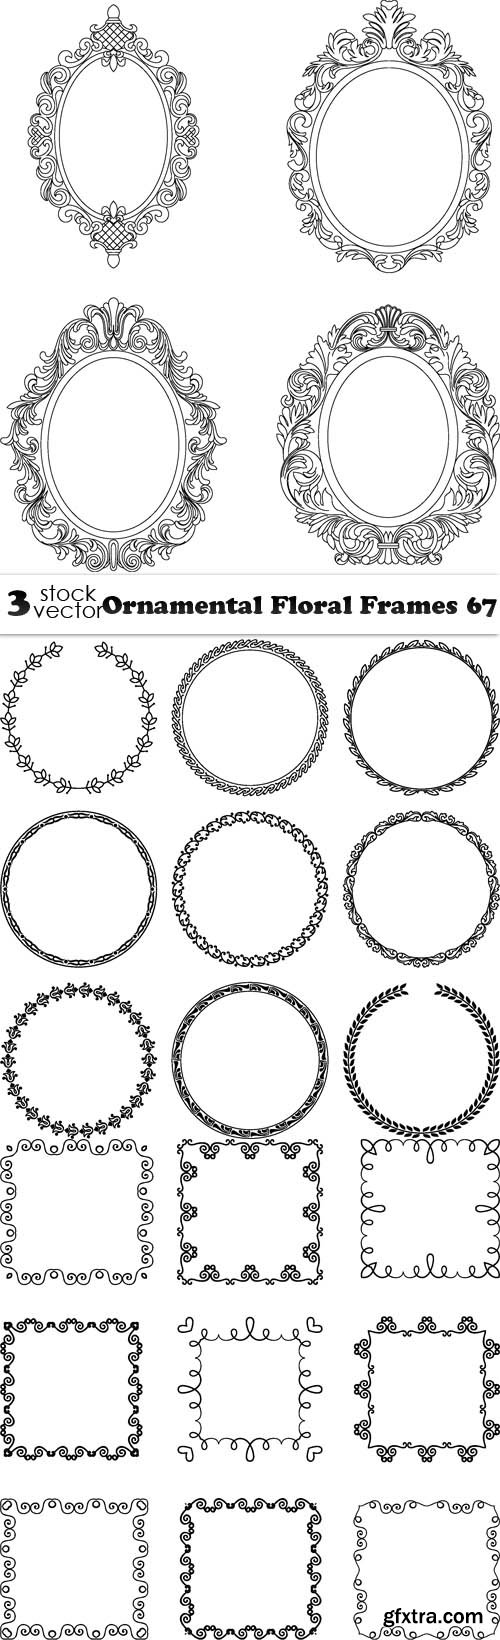 Vectors - Ornamental Floral Frames 67